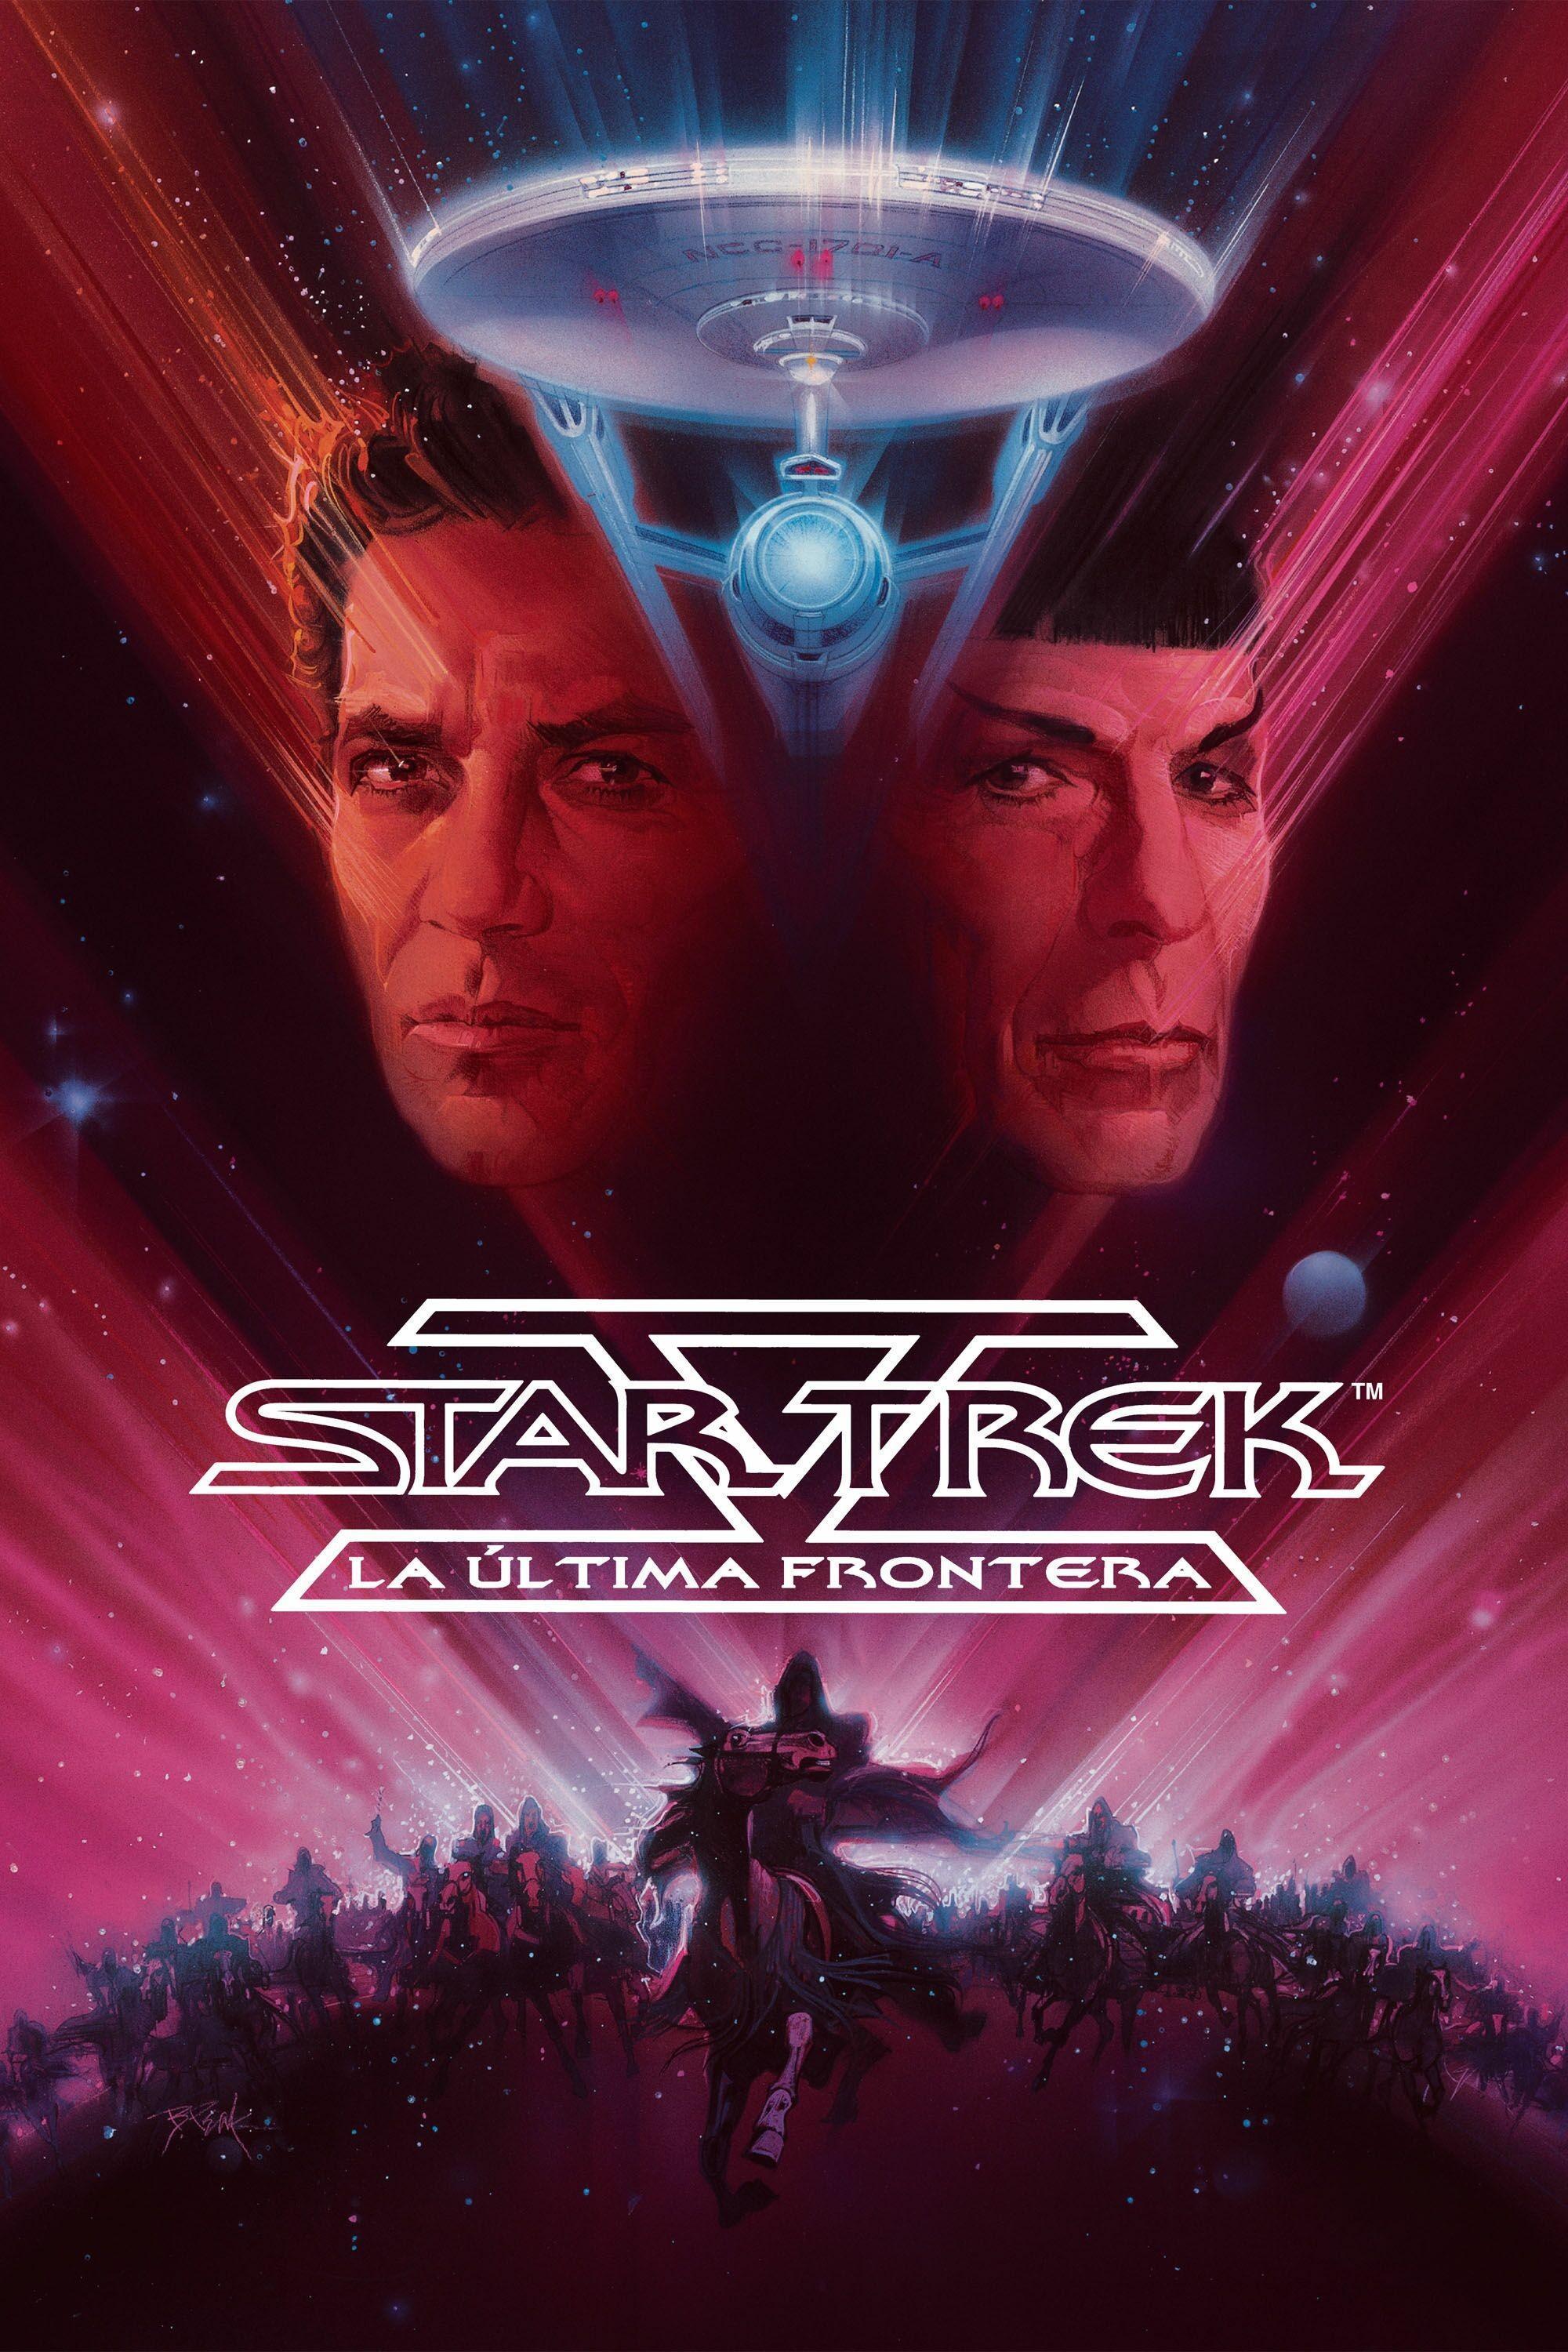 Постер фильма Звездный путь 5: Последний рубеж | Star Trek V: The Final Frontier